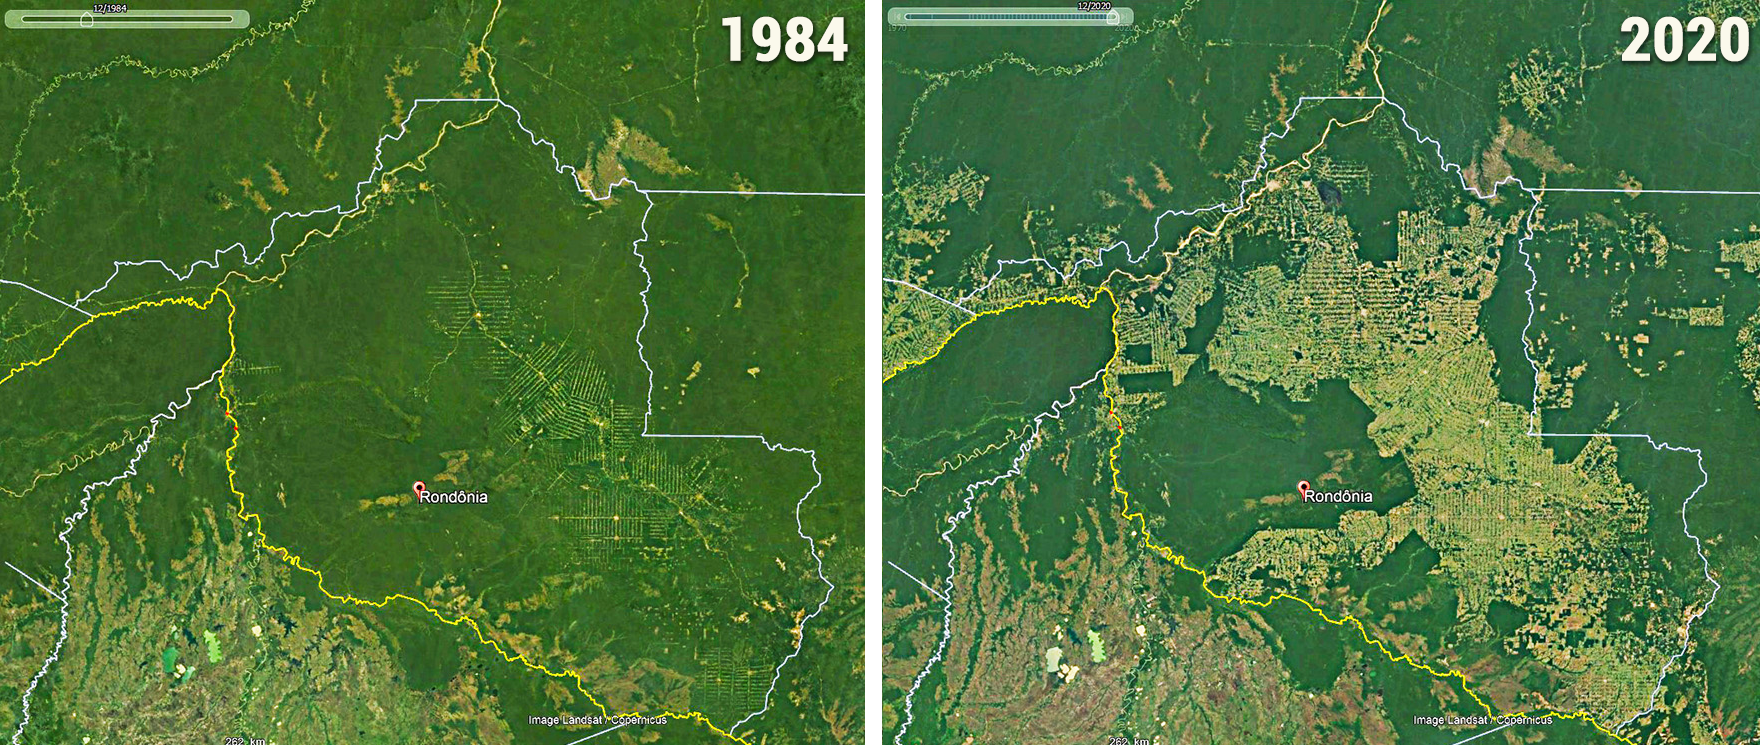 Colonisation agraire et fronts pionniers au Rondonia